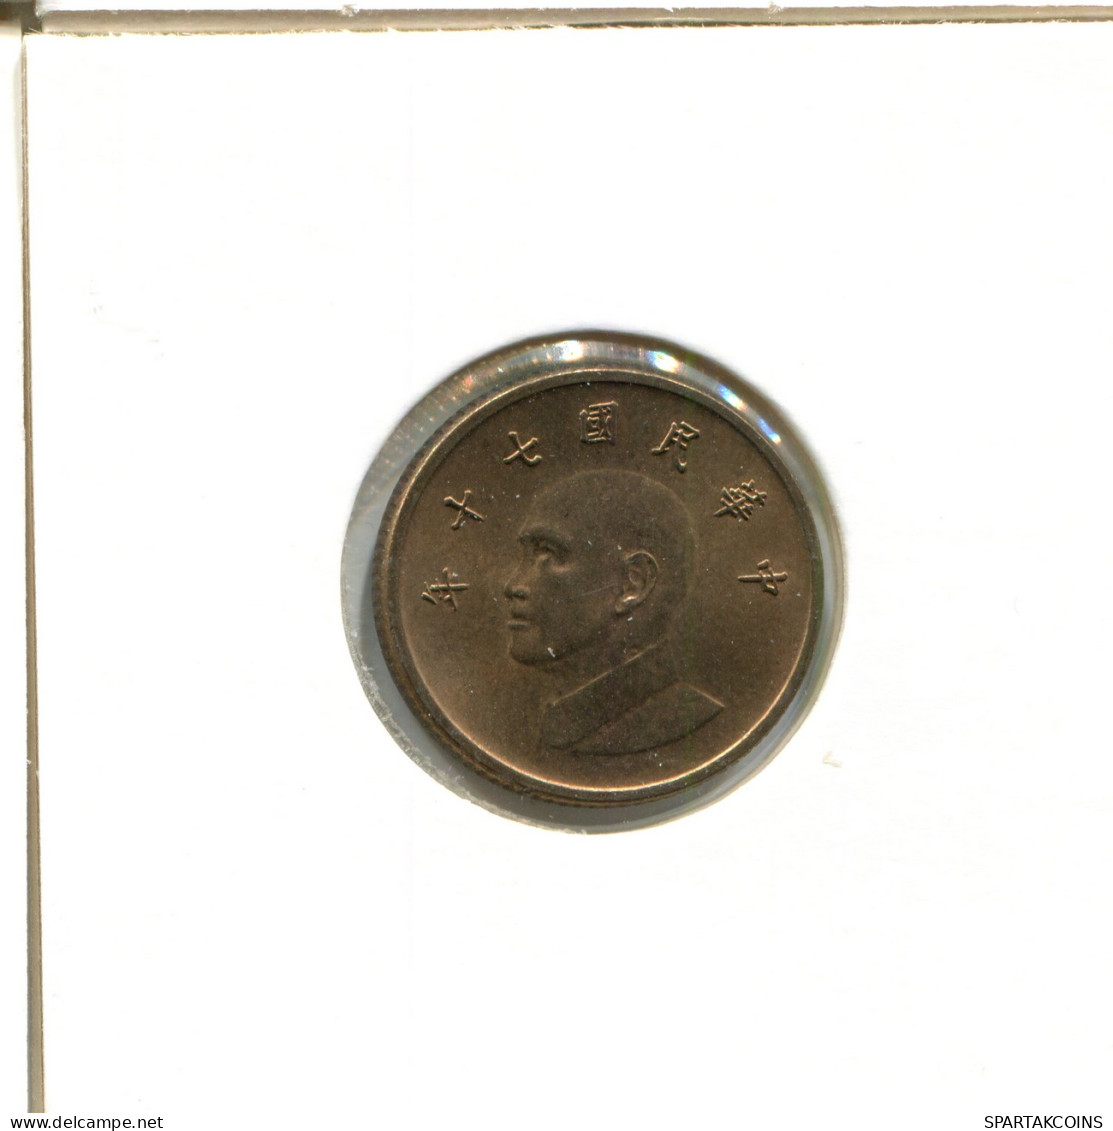 1 NEW DOLLAR 1981 TAIWAN Coin #AX493.U - Taiwan